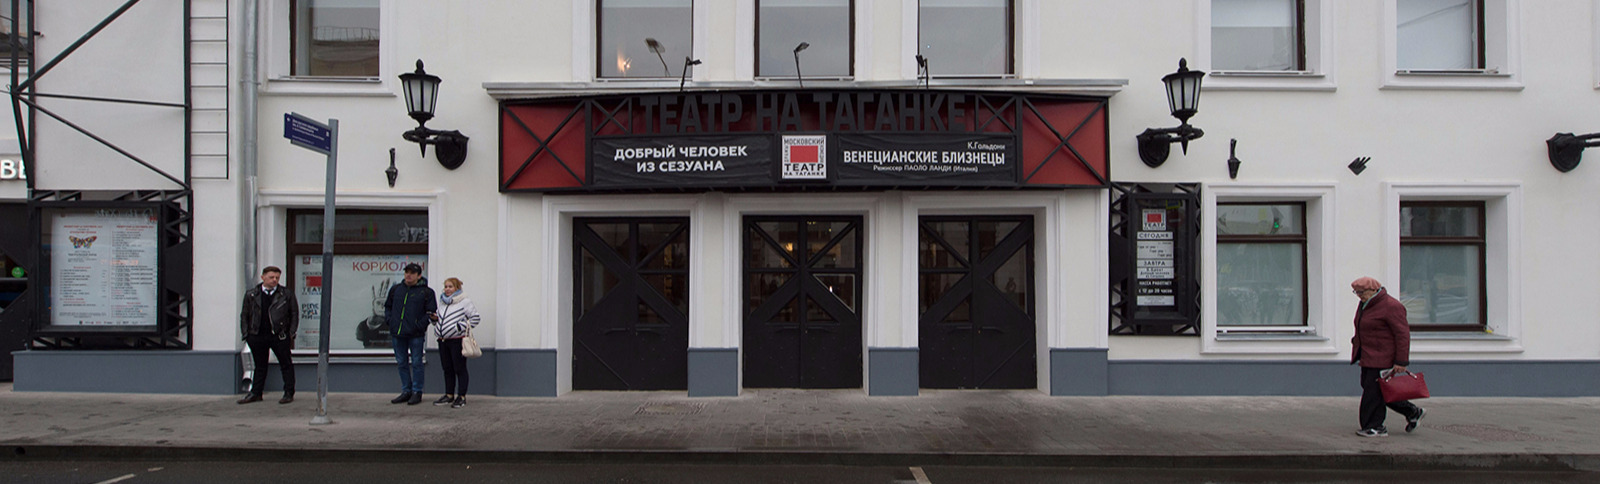 Театр на Таганке